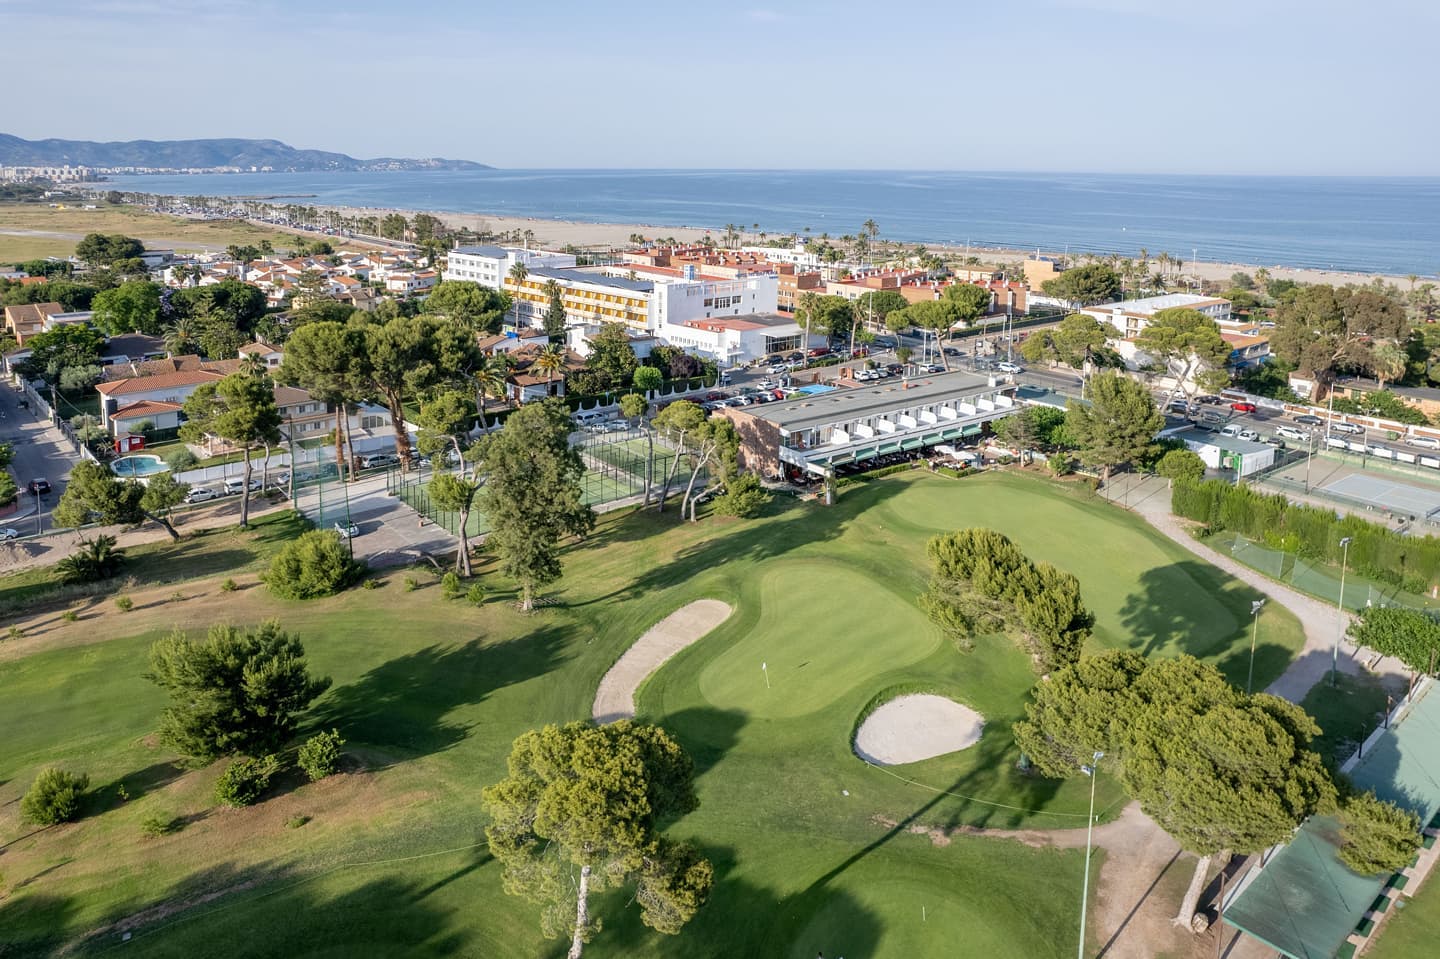 Club de Golf Costa Azahar.